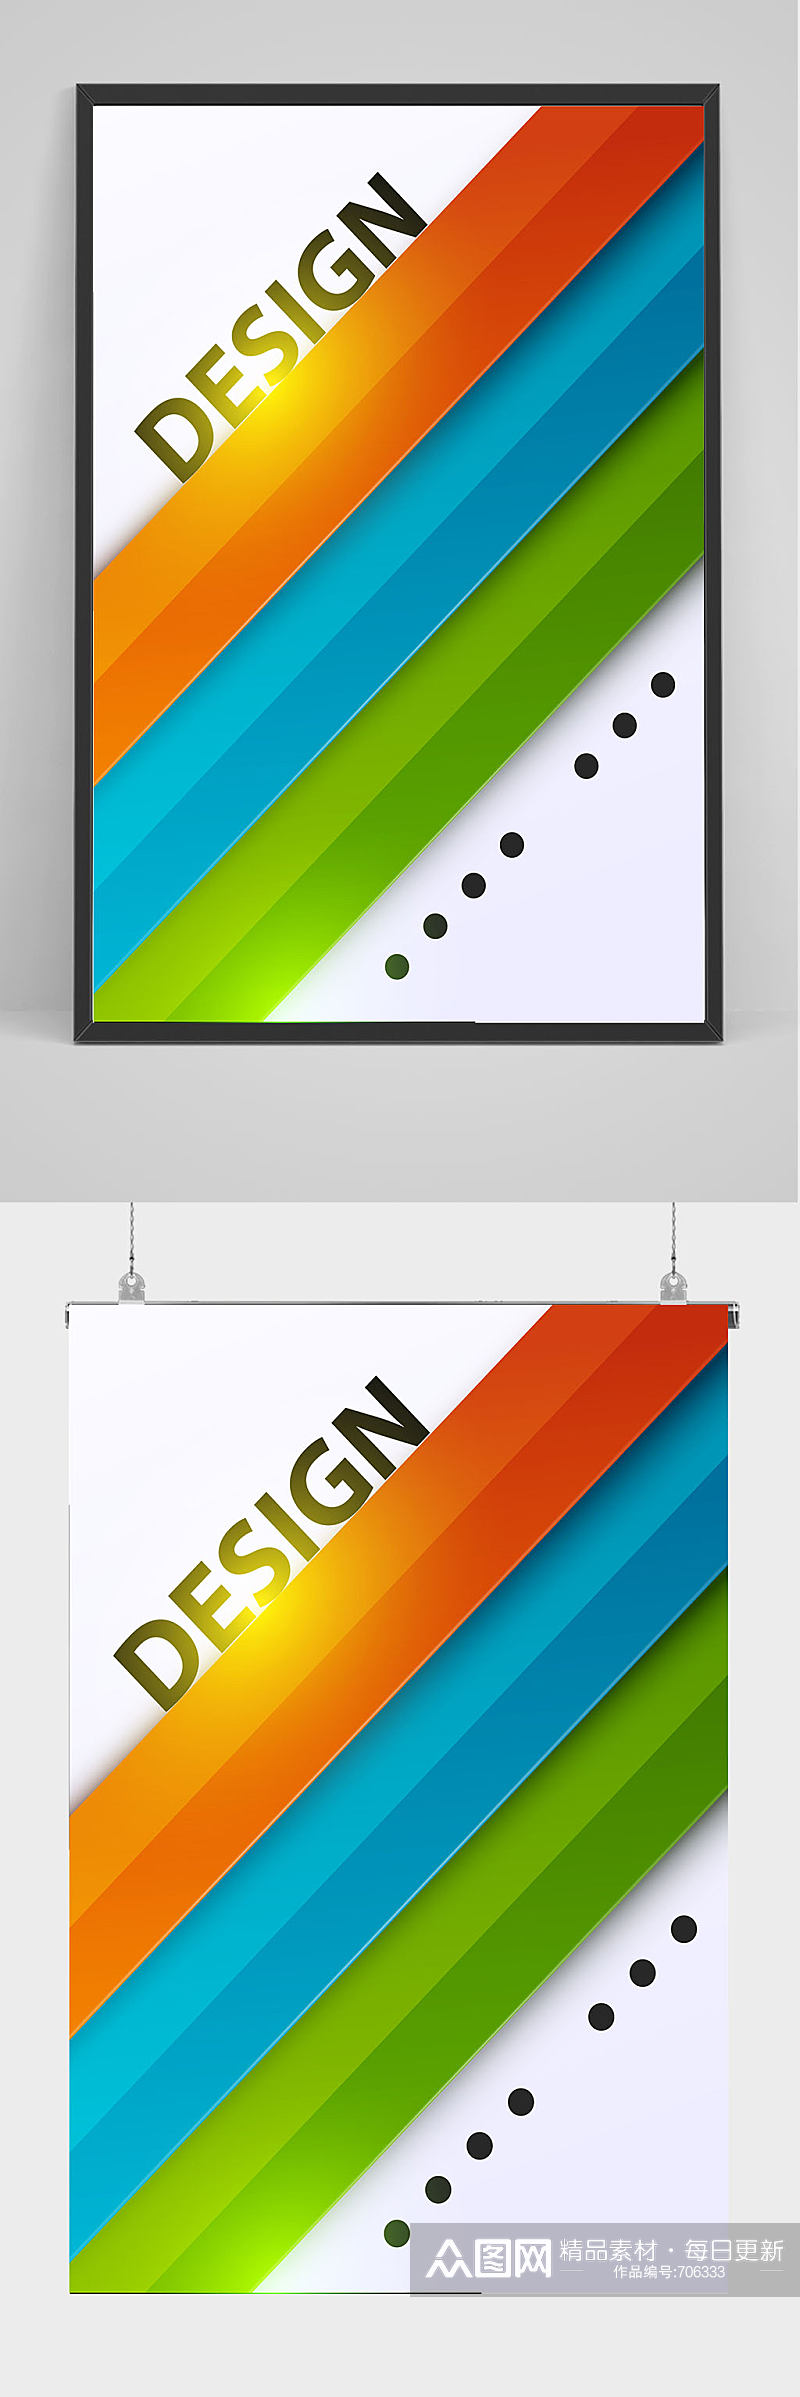 创意图形商务公司通用海报设计素材